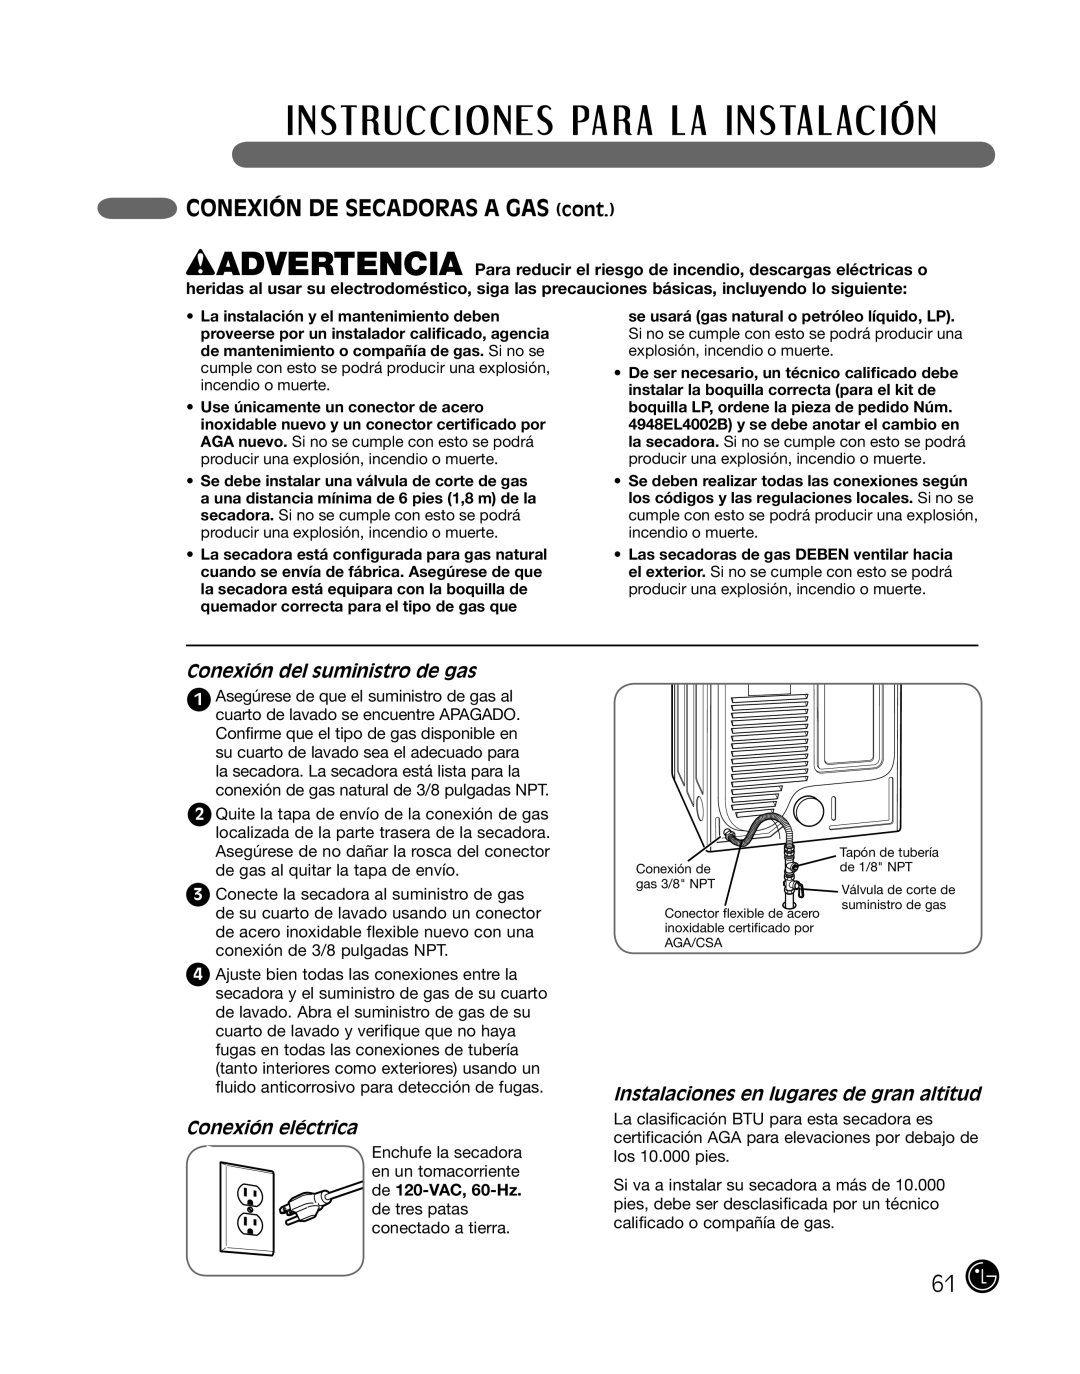 LG Electronics P154 manual CONEXIÓN DE SECADORAS A GAS cont, Conexión del suministro de gas, Conexión eléctrica 